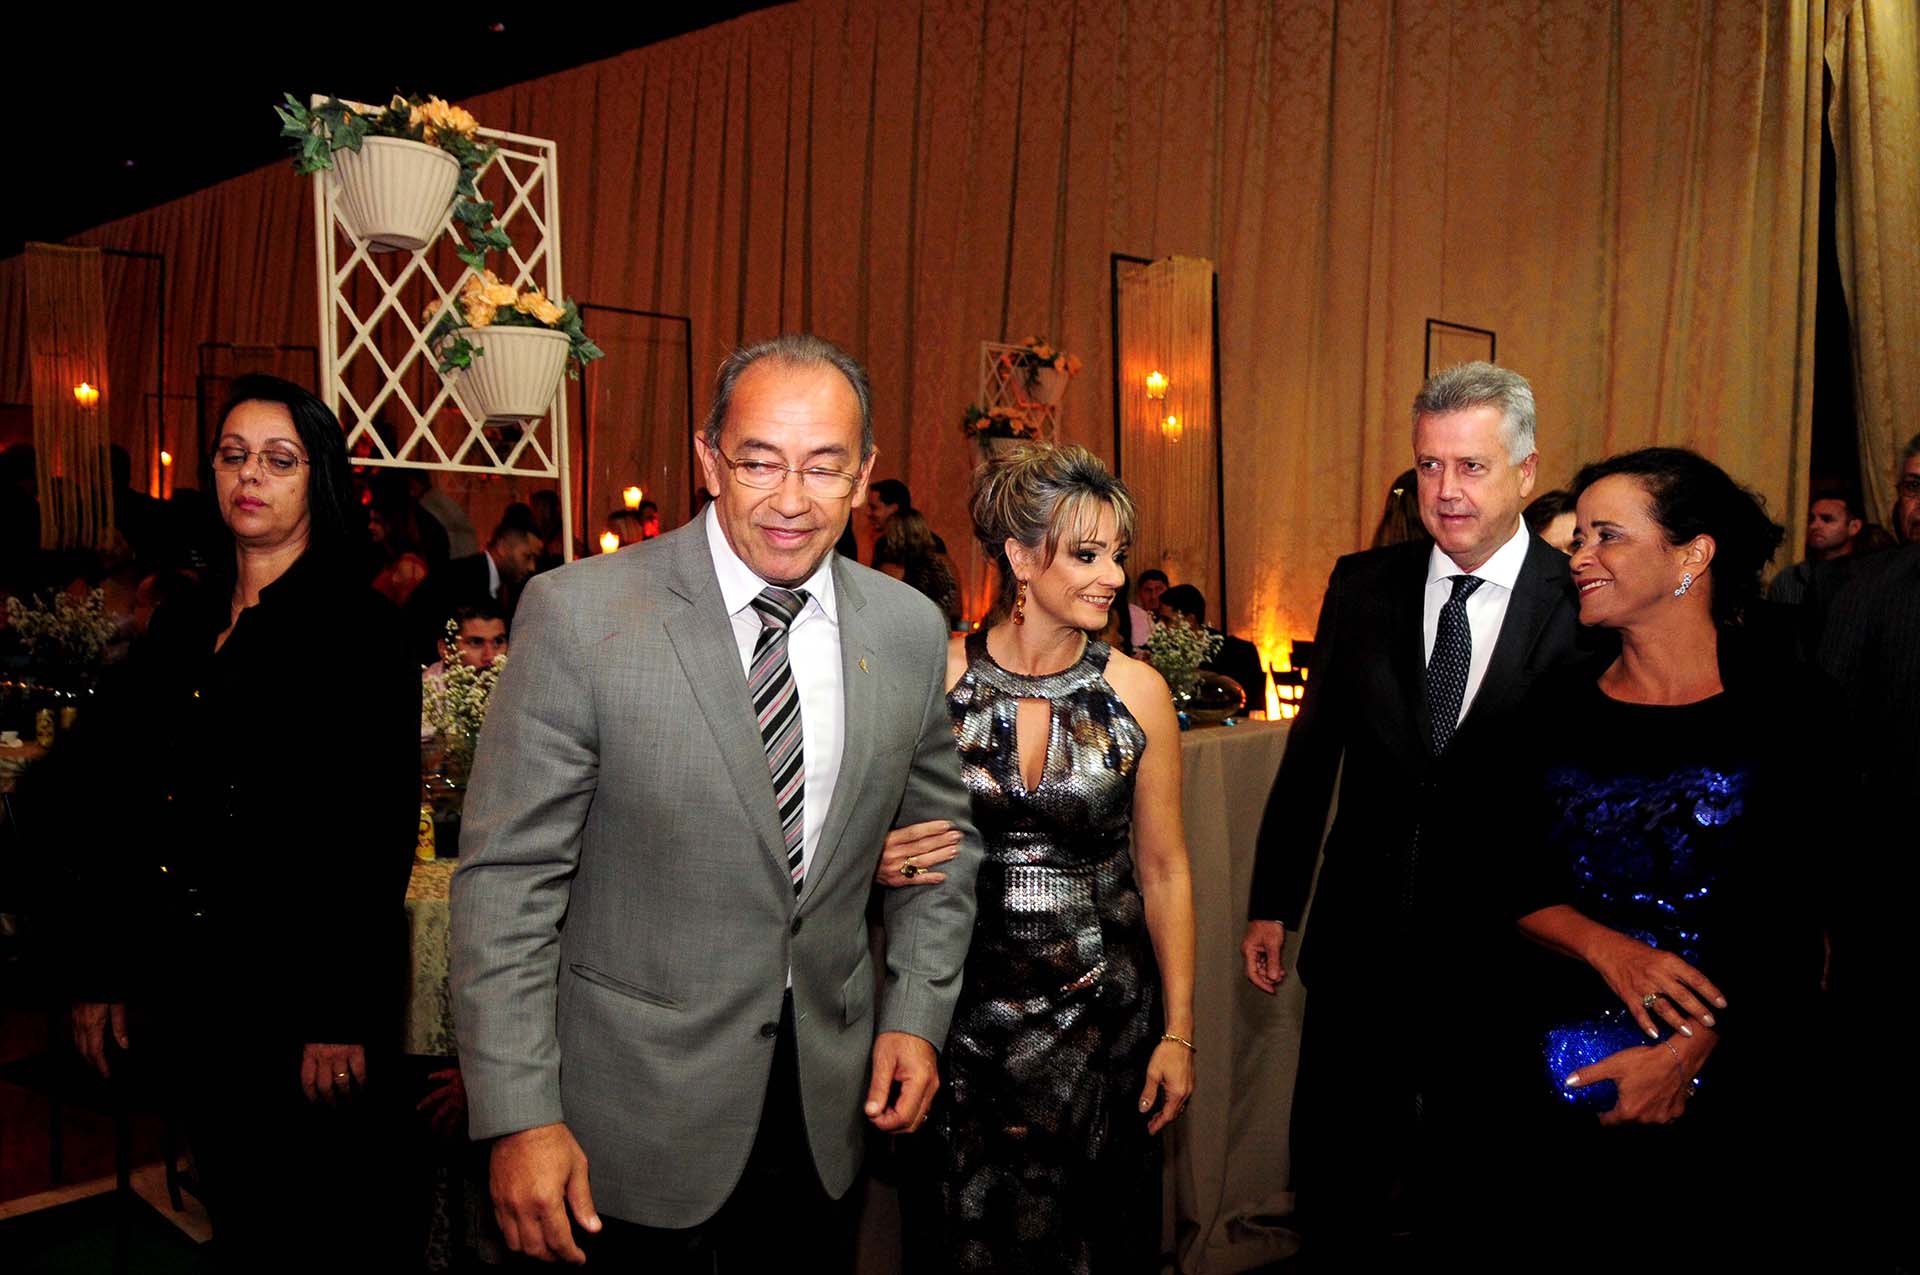 O administrador de Sobradinho, Divino Sales com a esposa, Ana Sales, e o governador Rodrigo Rollemberg acompanhado da esposa, Márcia Rollemberg durante o evento.